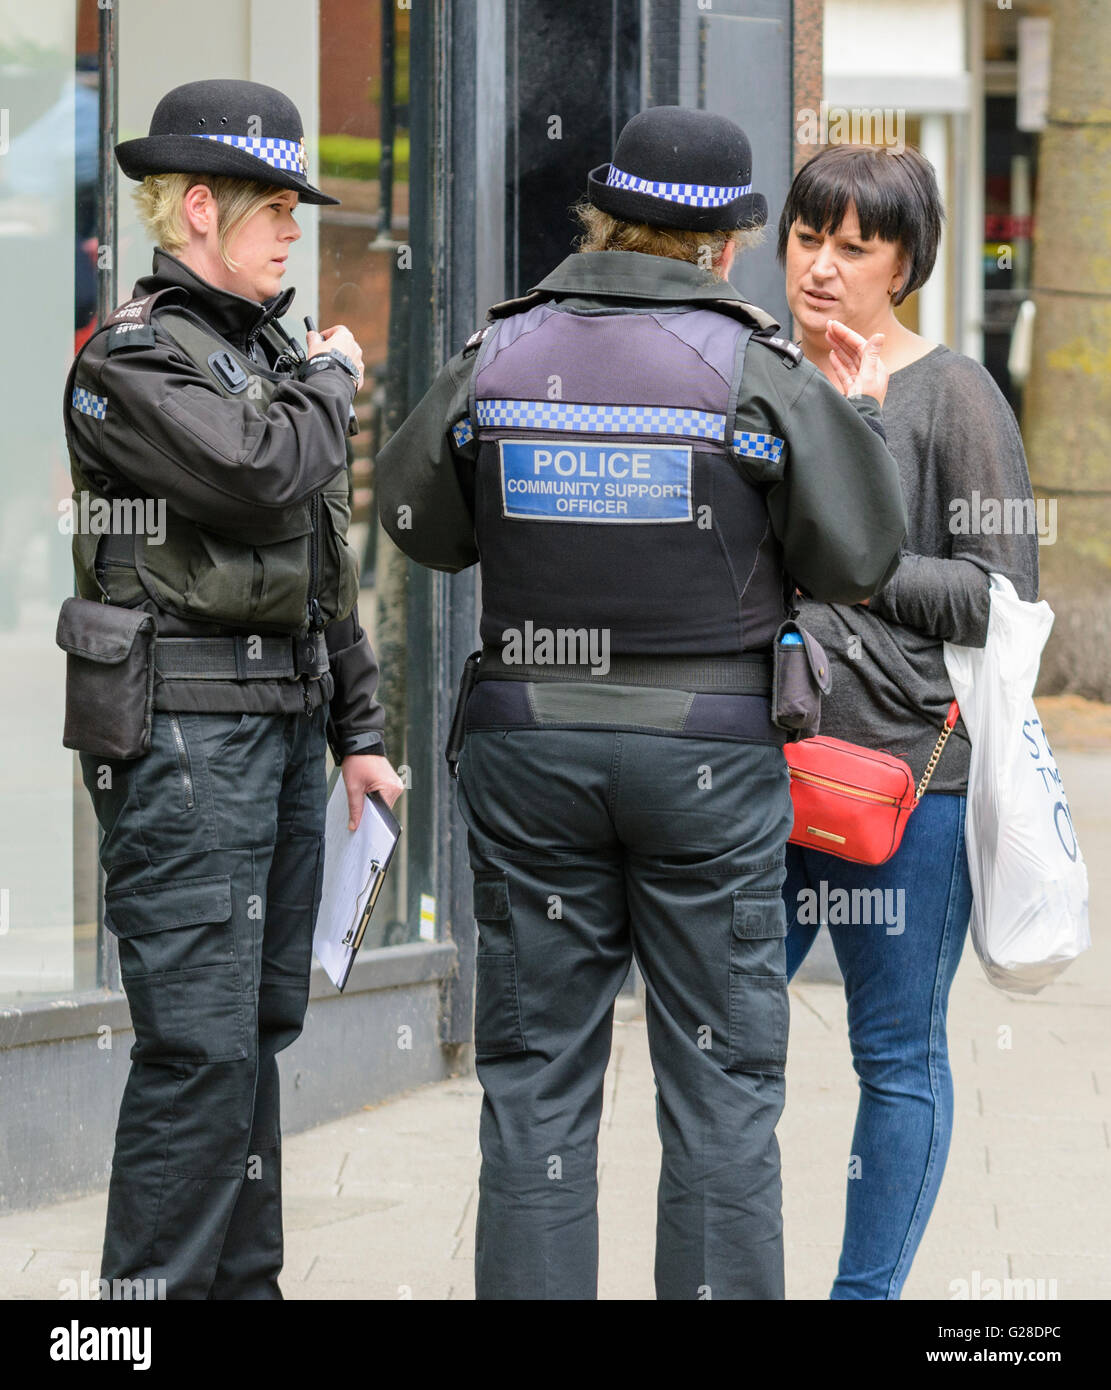 Les agents de soutien communautaire de la police s'adressant à un piéton dans une ville au Royaume-Uni. Banque D'Images